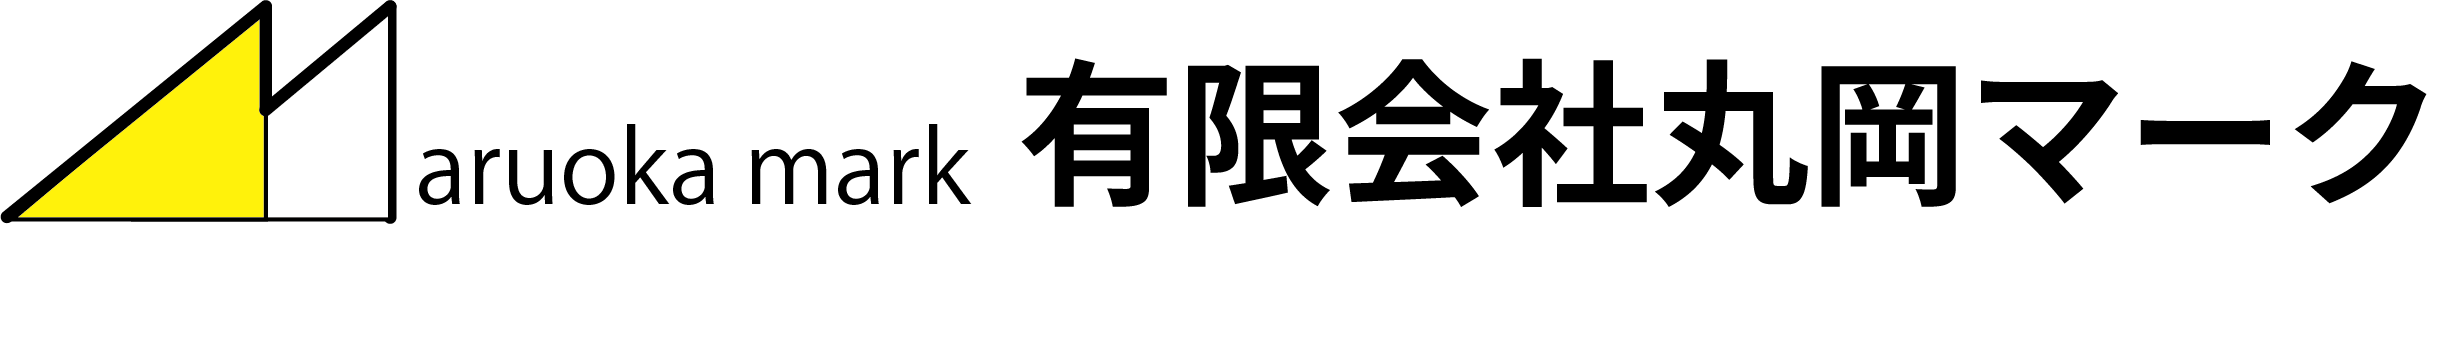 文字を織る 漢字 ひらがな 有限会社丸岡マーク